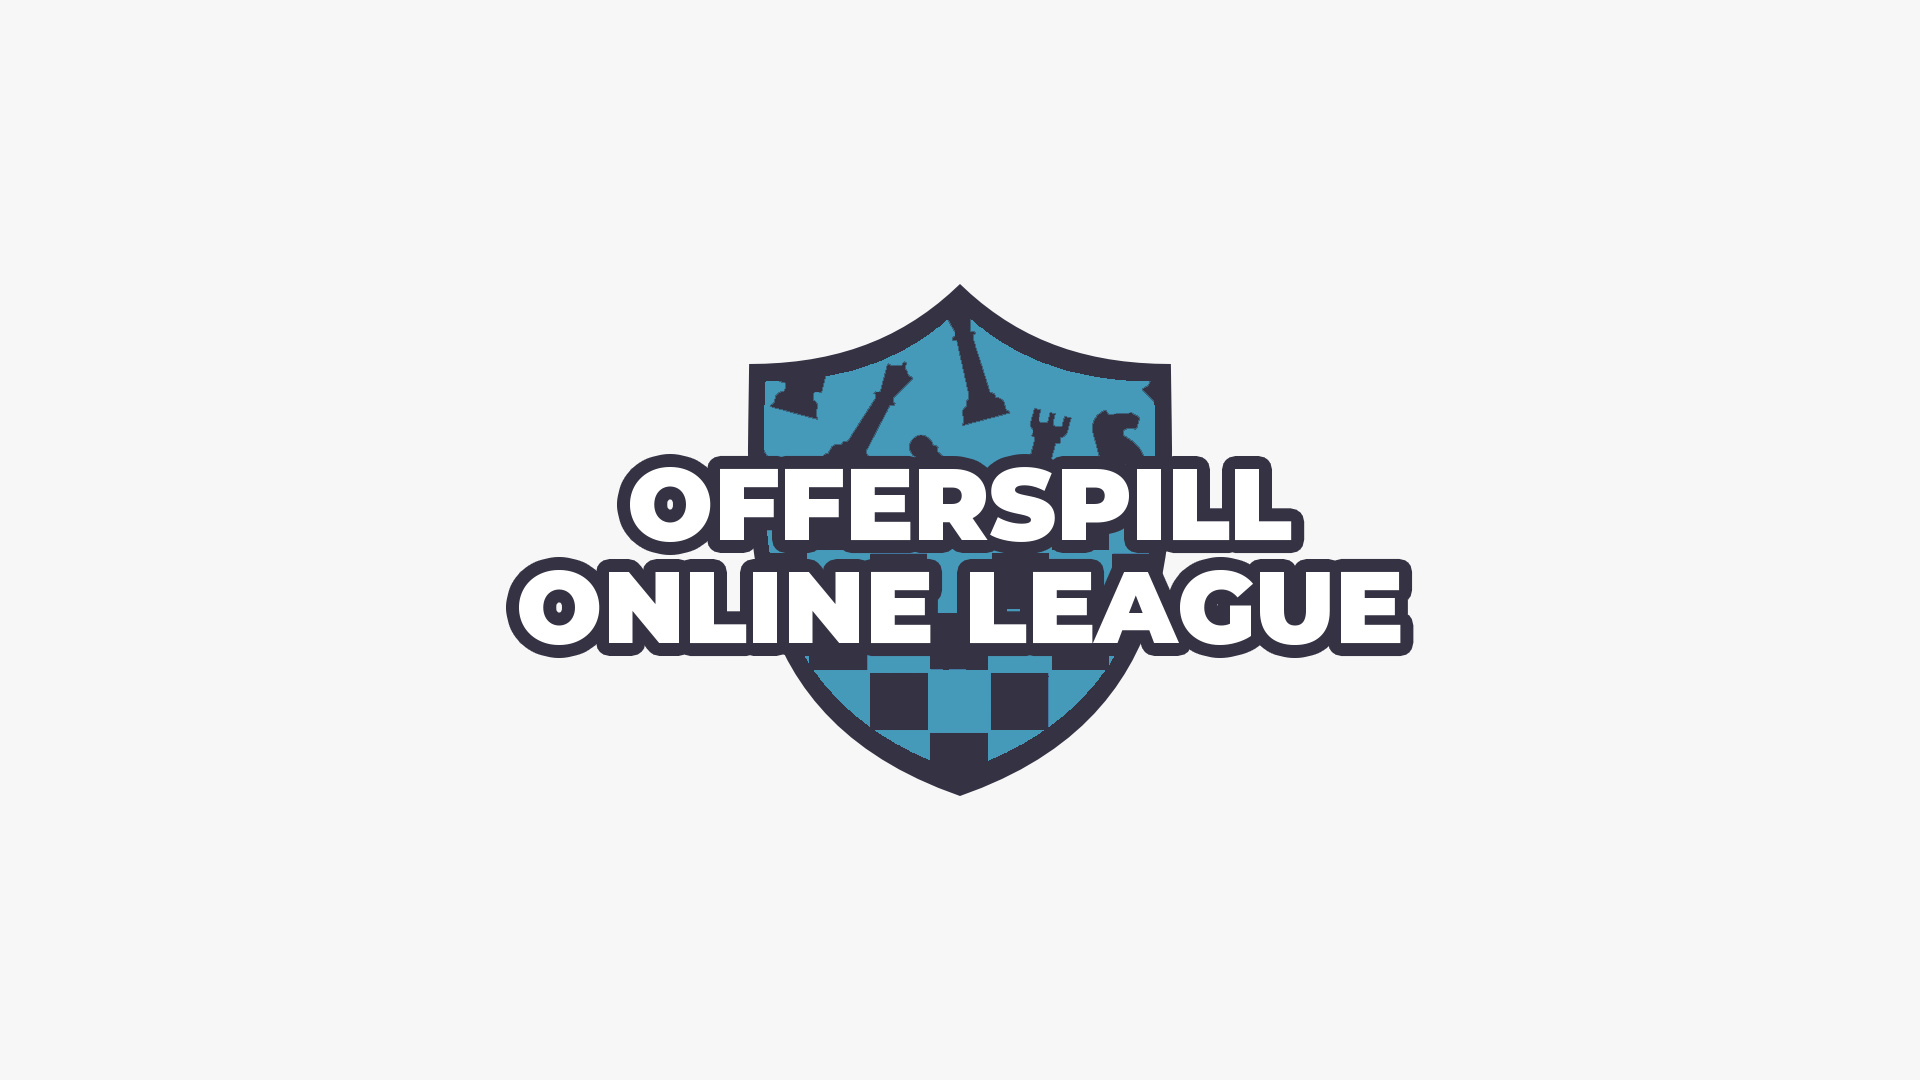 Introducing - Offerspill Online League